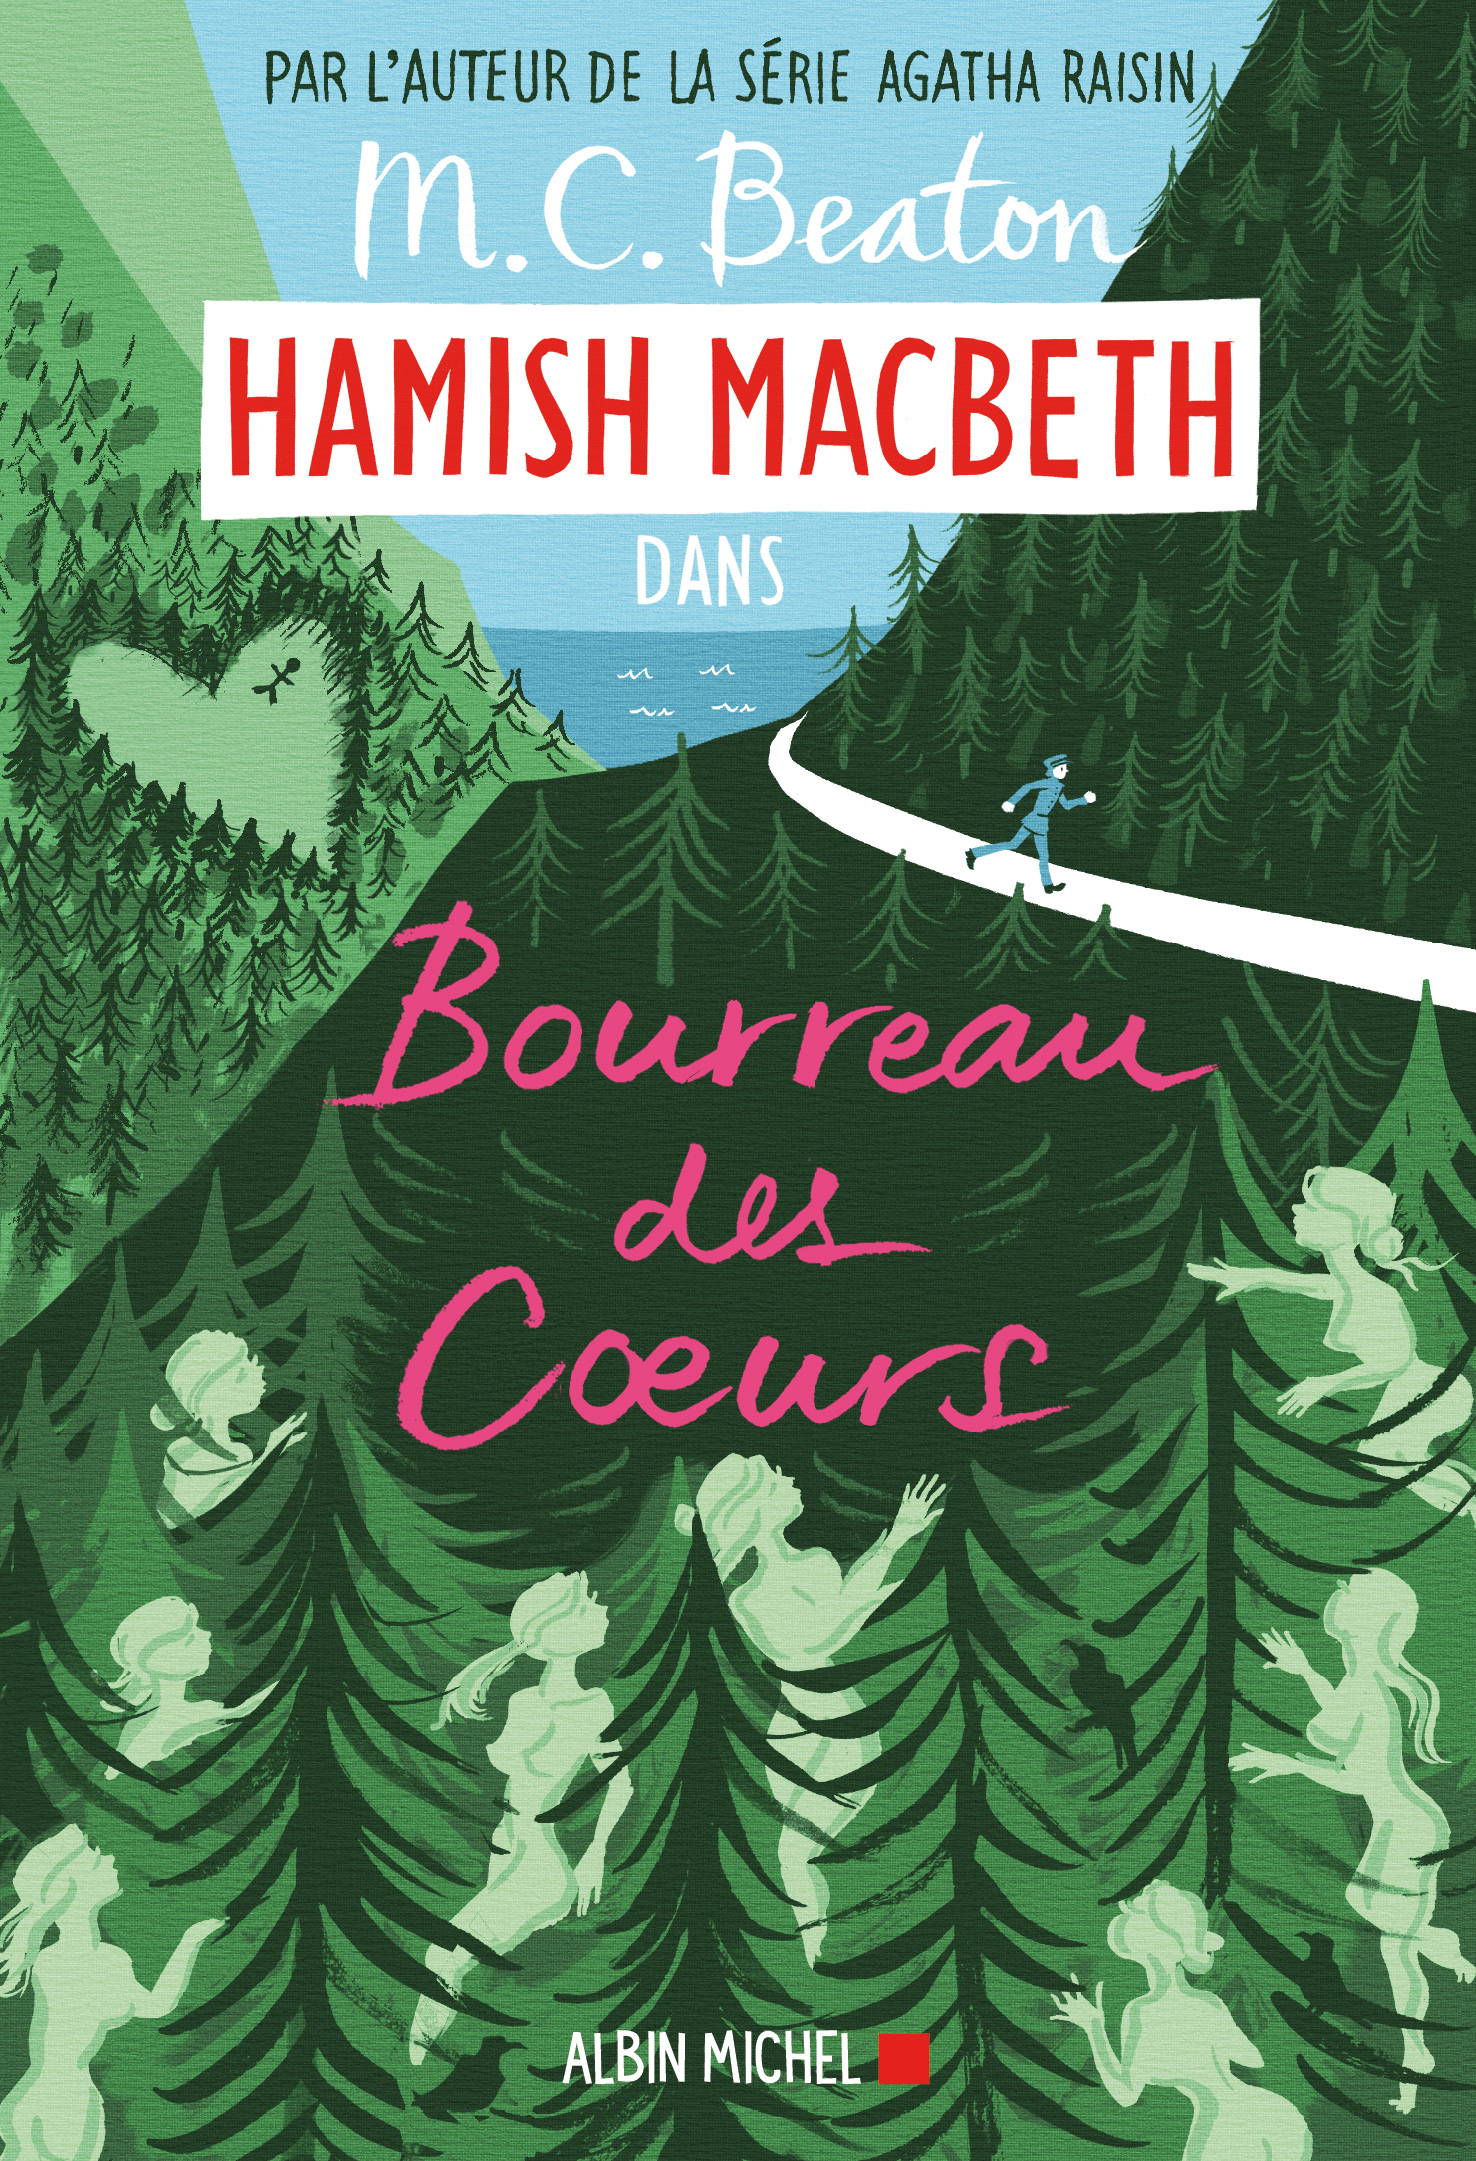 Couverture du livre Hamish Macbeth 10 - Bourreau des coeurs